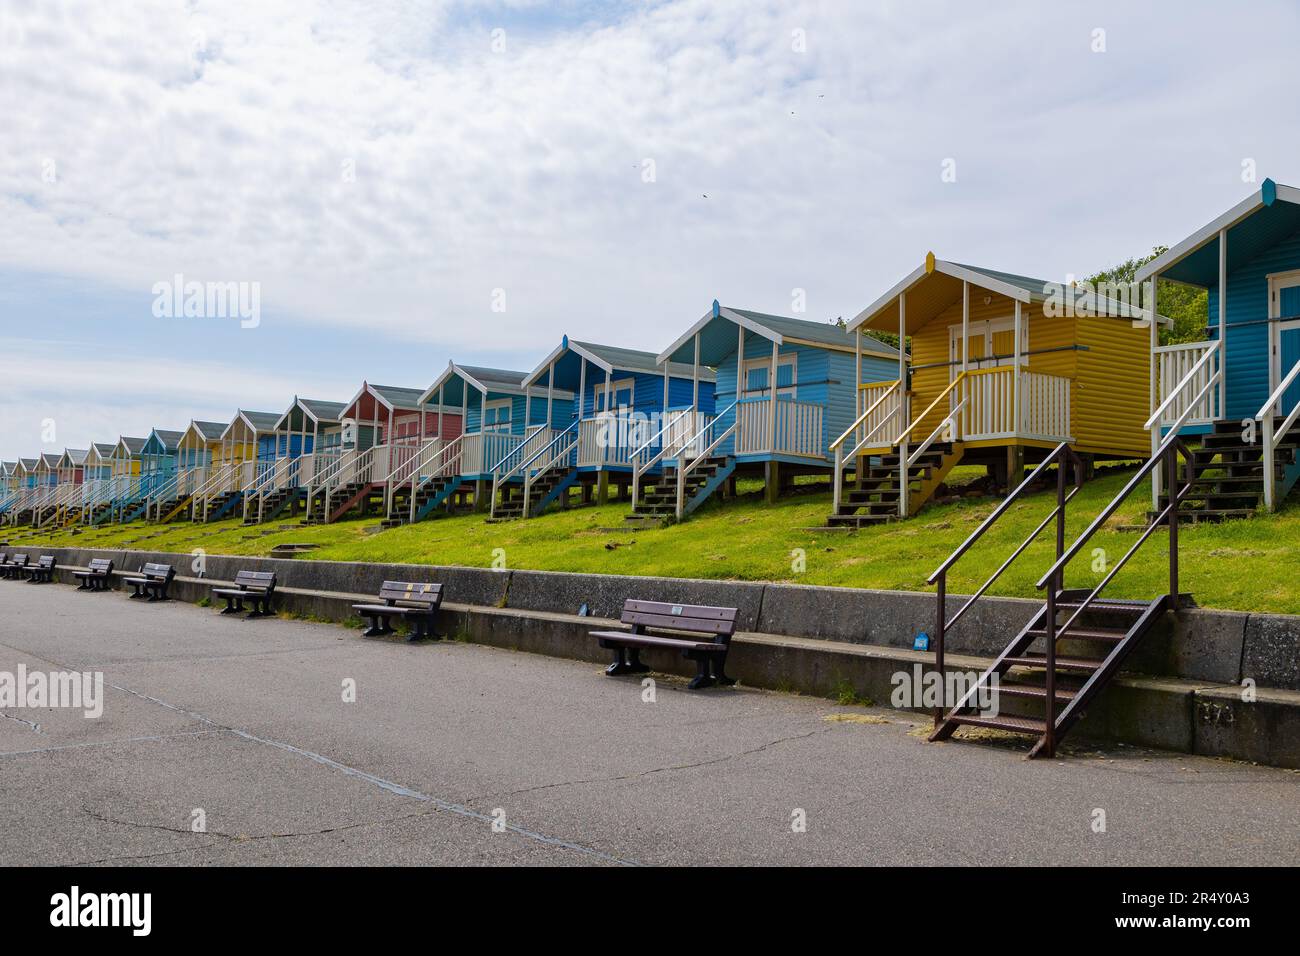 Minster-on-Sea, île de Shepey. Leas. Inster. Des cabanes de plage colorées par une journée ensoleillée. Banque D'Images